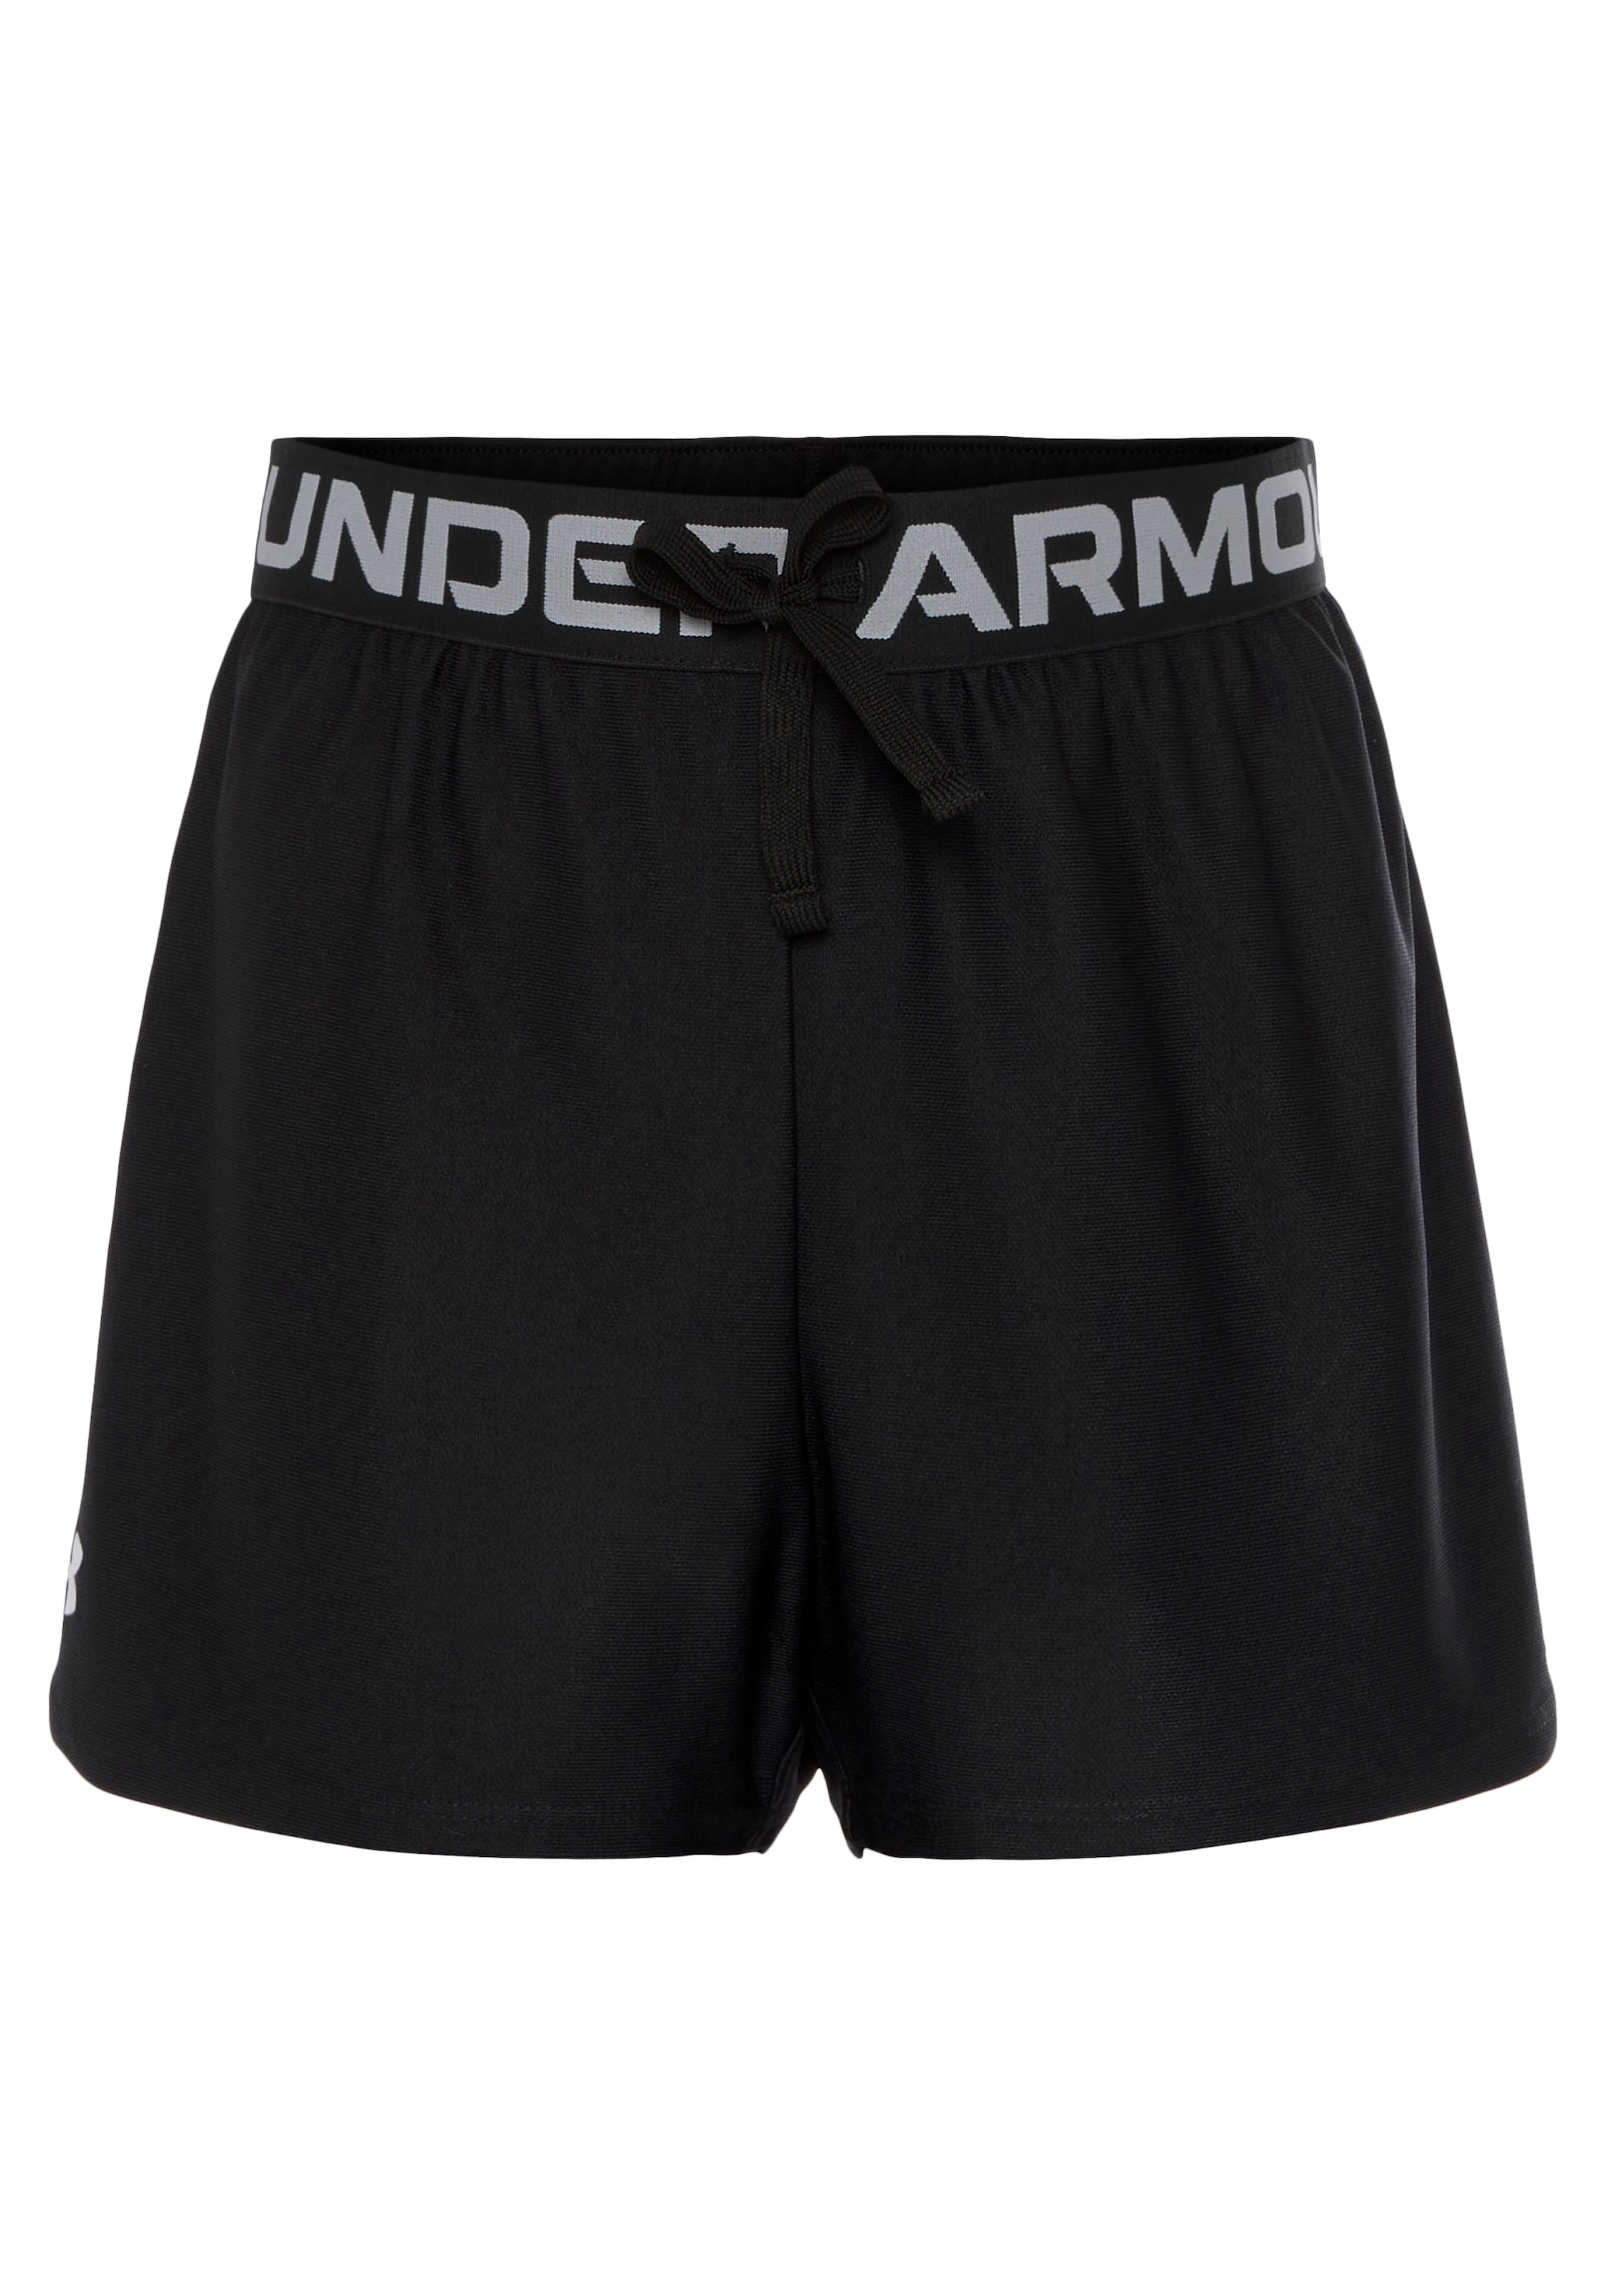 versandkostenfrei - Mindestbestellwert Under Armour® Shorts« Up Trendige ohne Solid shoppen Shorts »Play